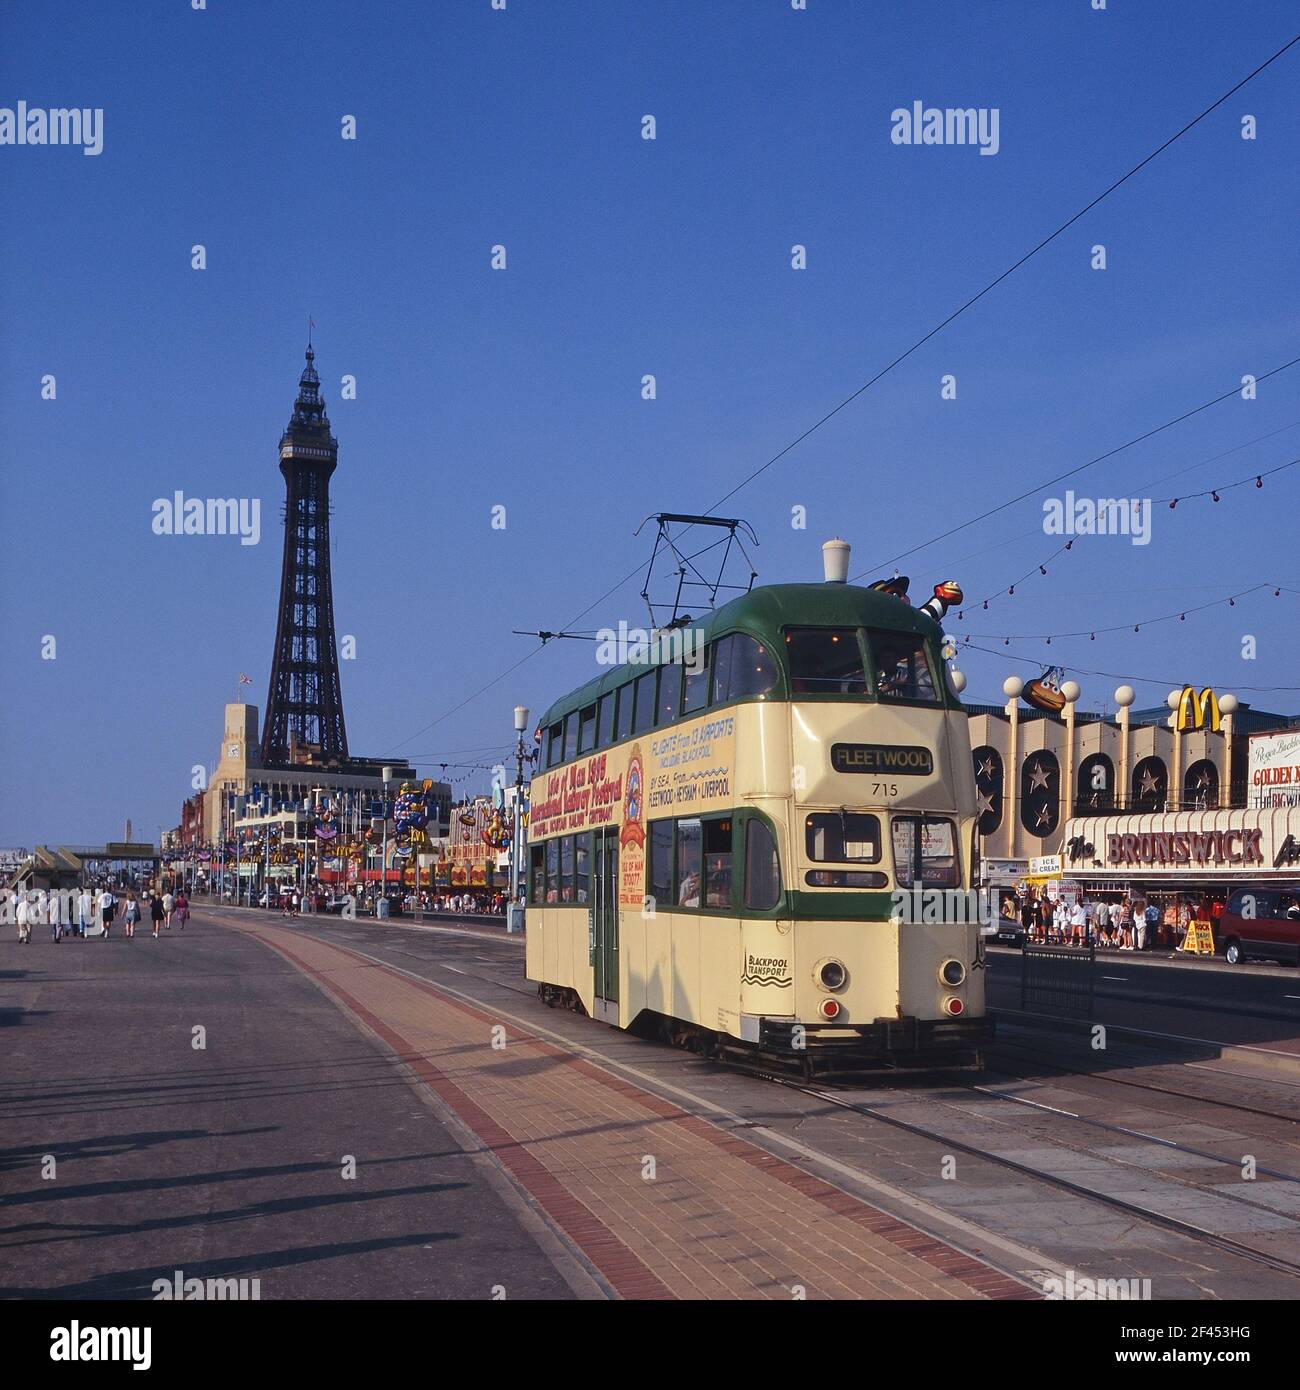 Ballonwagen Straßenbahn 715 auf der Promenade. Blackpool, Lancashire, England, Großbritannien Stockfoto